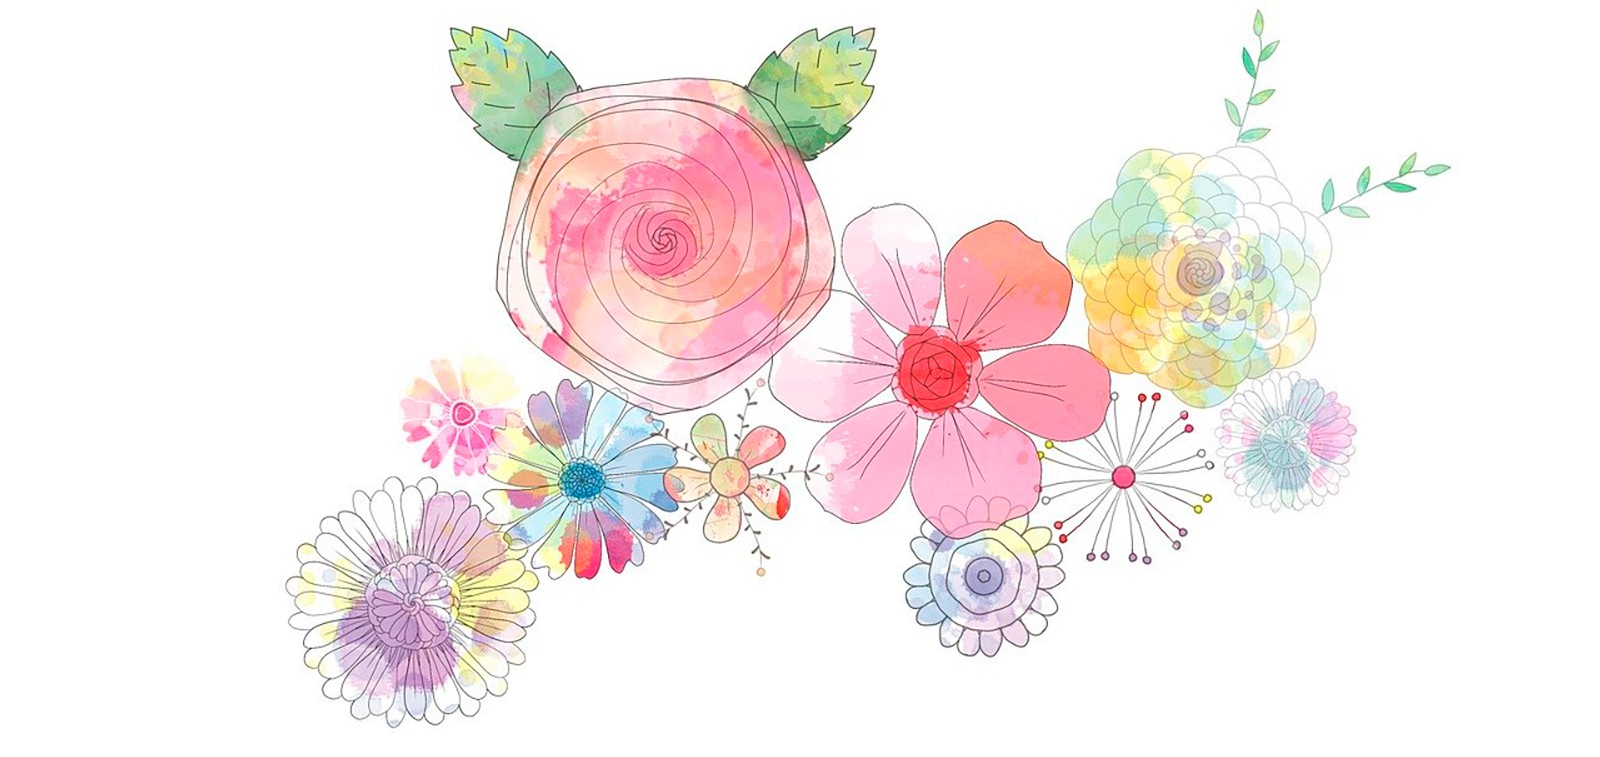 Piirretyssä kuvassa näkyy eri värisiä kukkia.